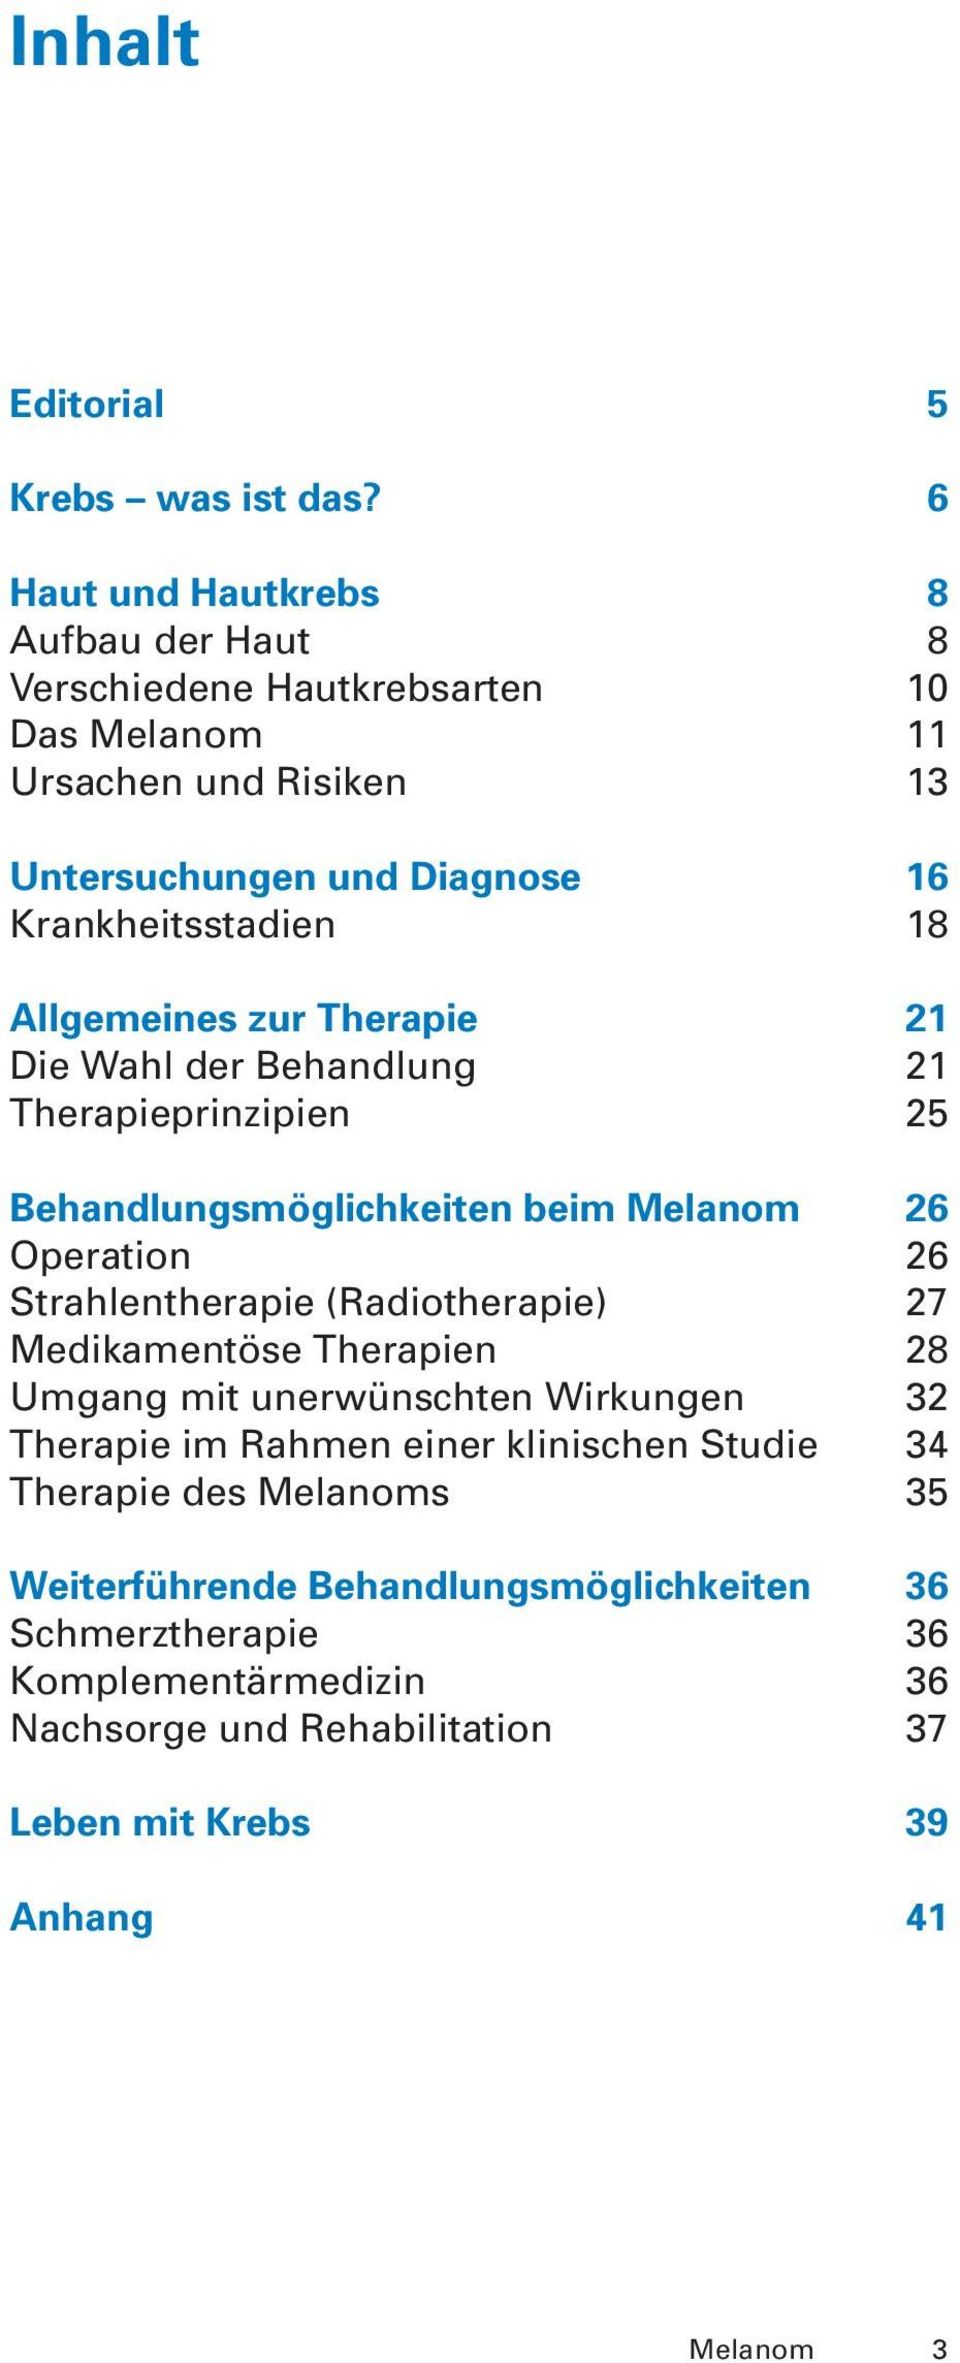 Allgemeines zur Therapie 21 Die Wahl der Behandlung 21 Therapieprinzipien 25 Behandlungsmöglichkeiten beim Melanom 26 Operation 26 Strahlentherapie (Radiotherapie)